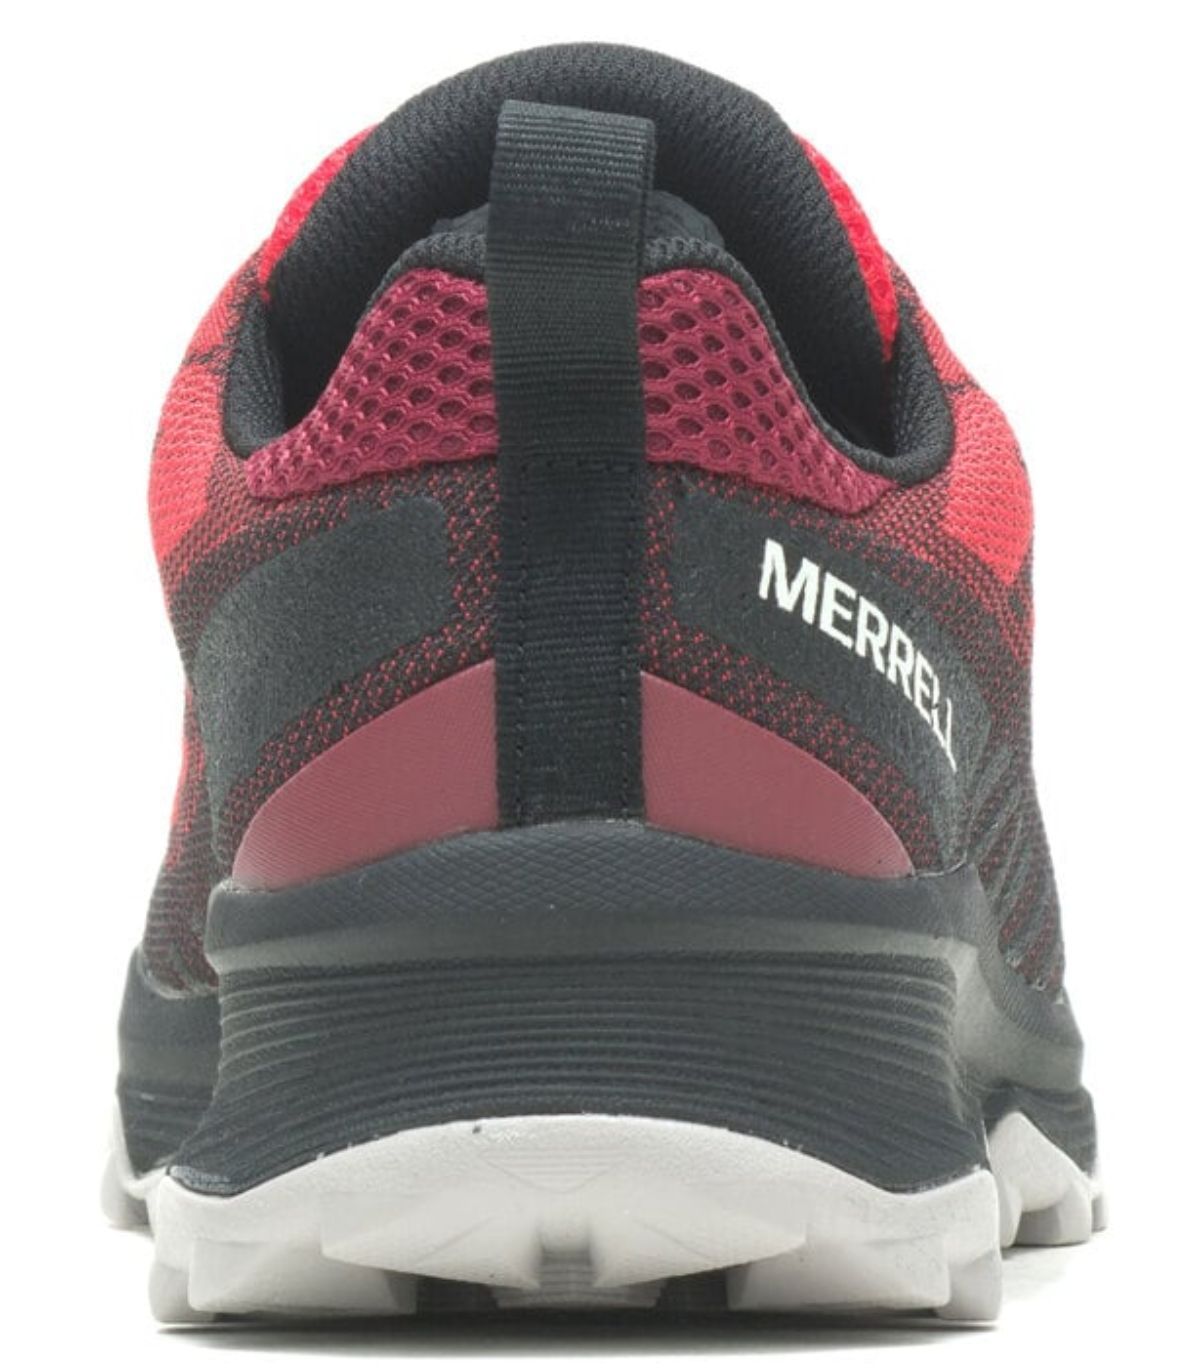 Zapatillas Running Merrell - Ofertas para comprar online y